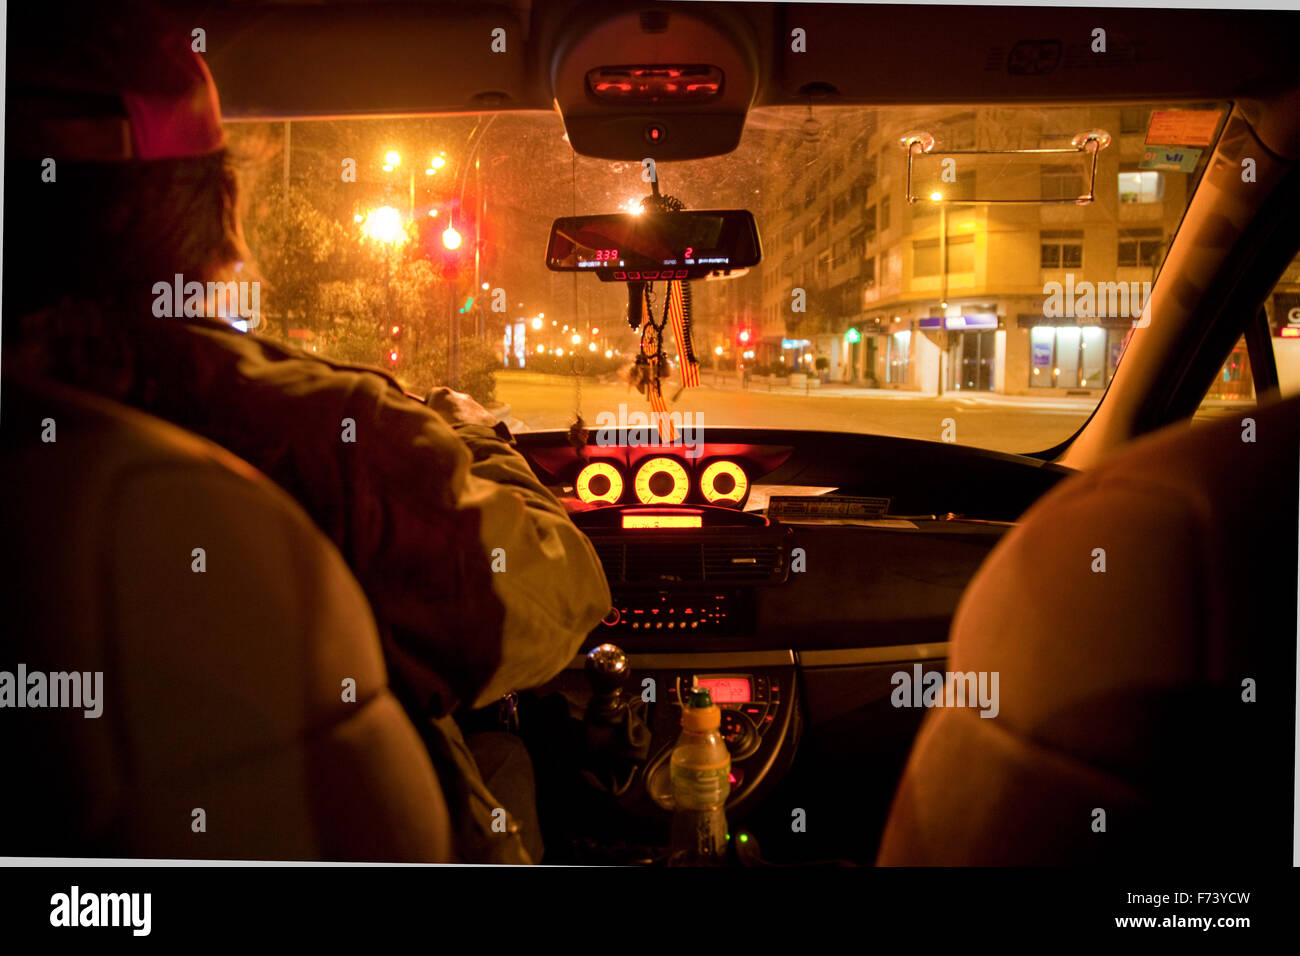 Сижу в полицейской машине. Такси ночью. Еду в такси ночью. Салон такси ночью. Вид из такси ночью.